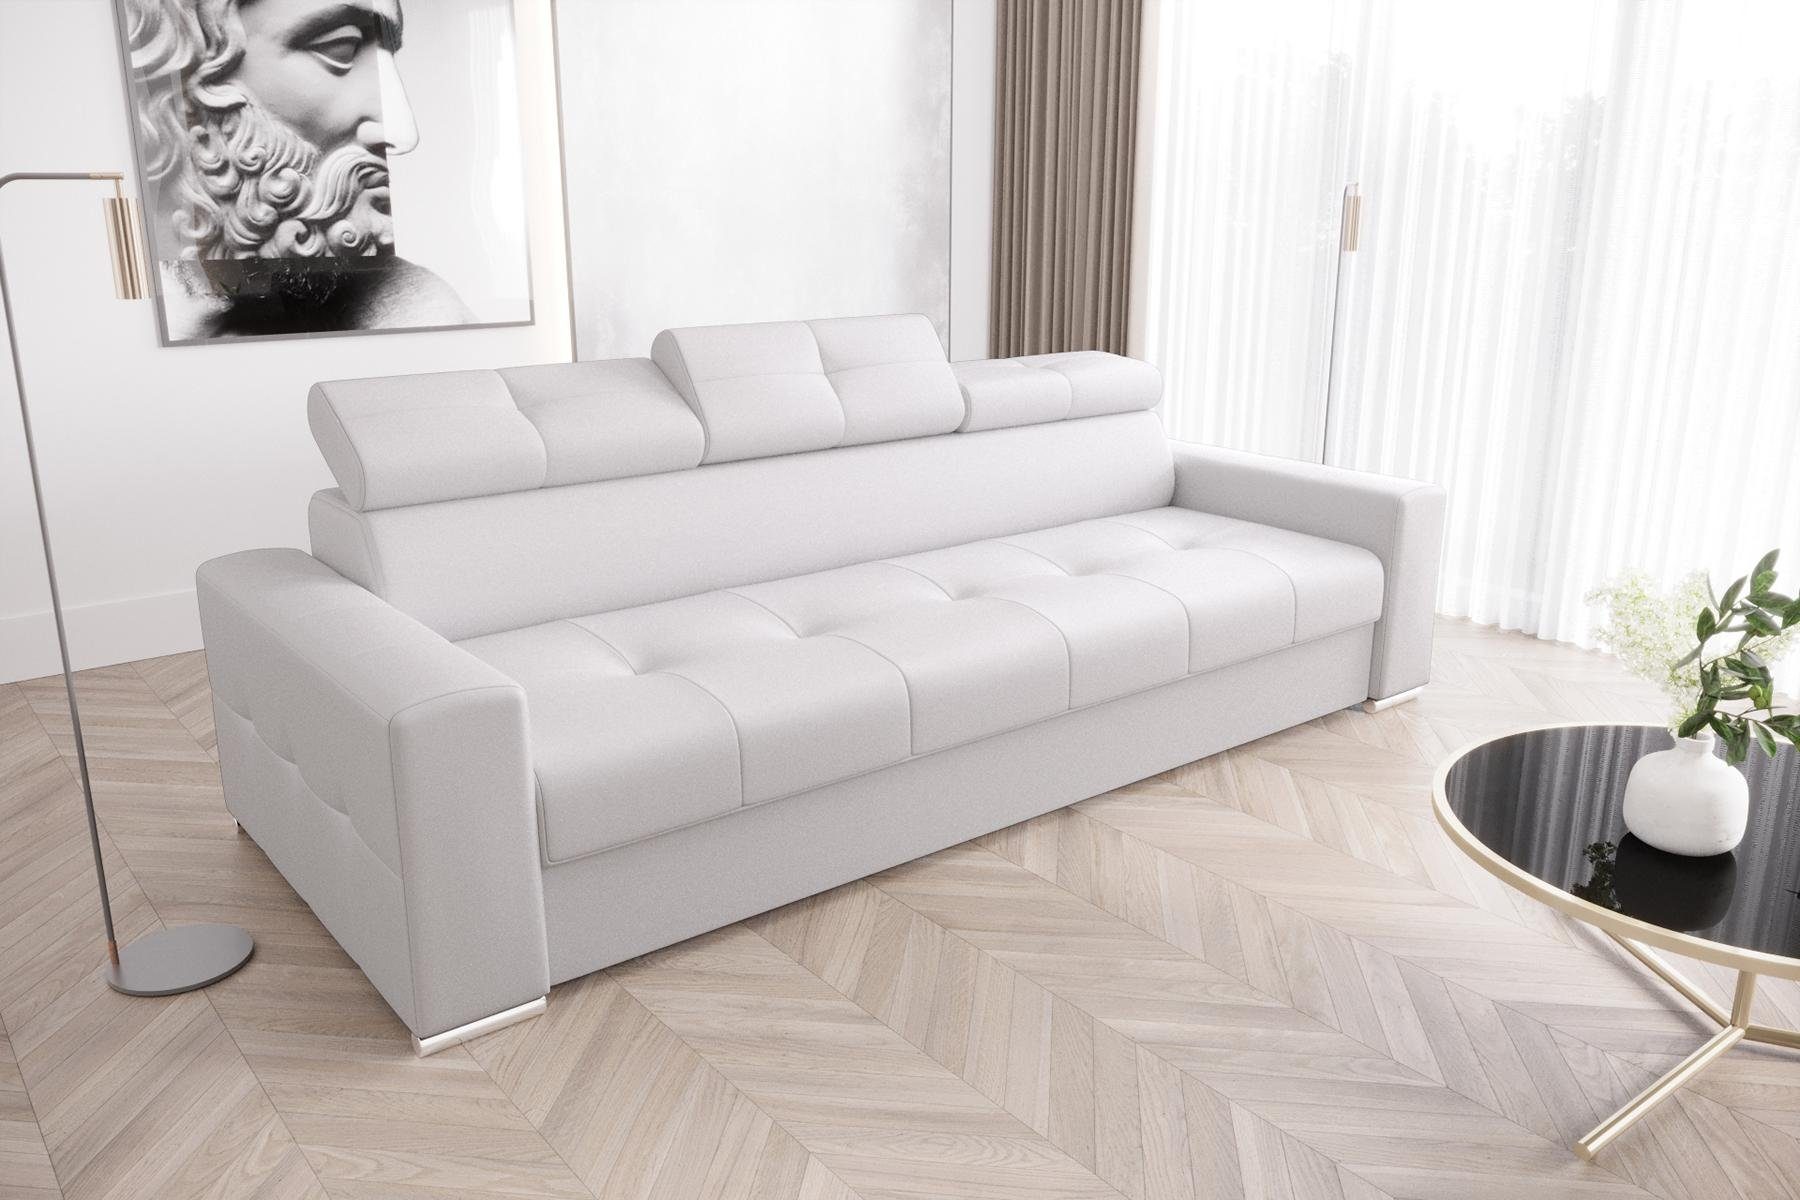 JVmoebel Sofa Moderne 3er Sitz Sofas Zimmer Möbel Weiß Polster Dreisitzer, Made in Europe